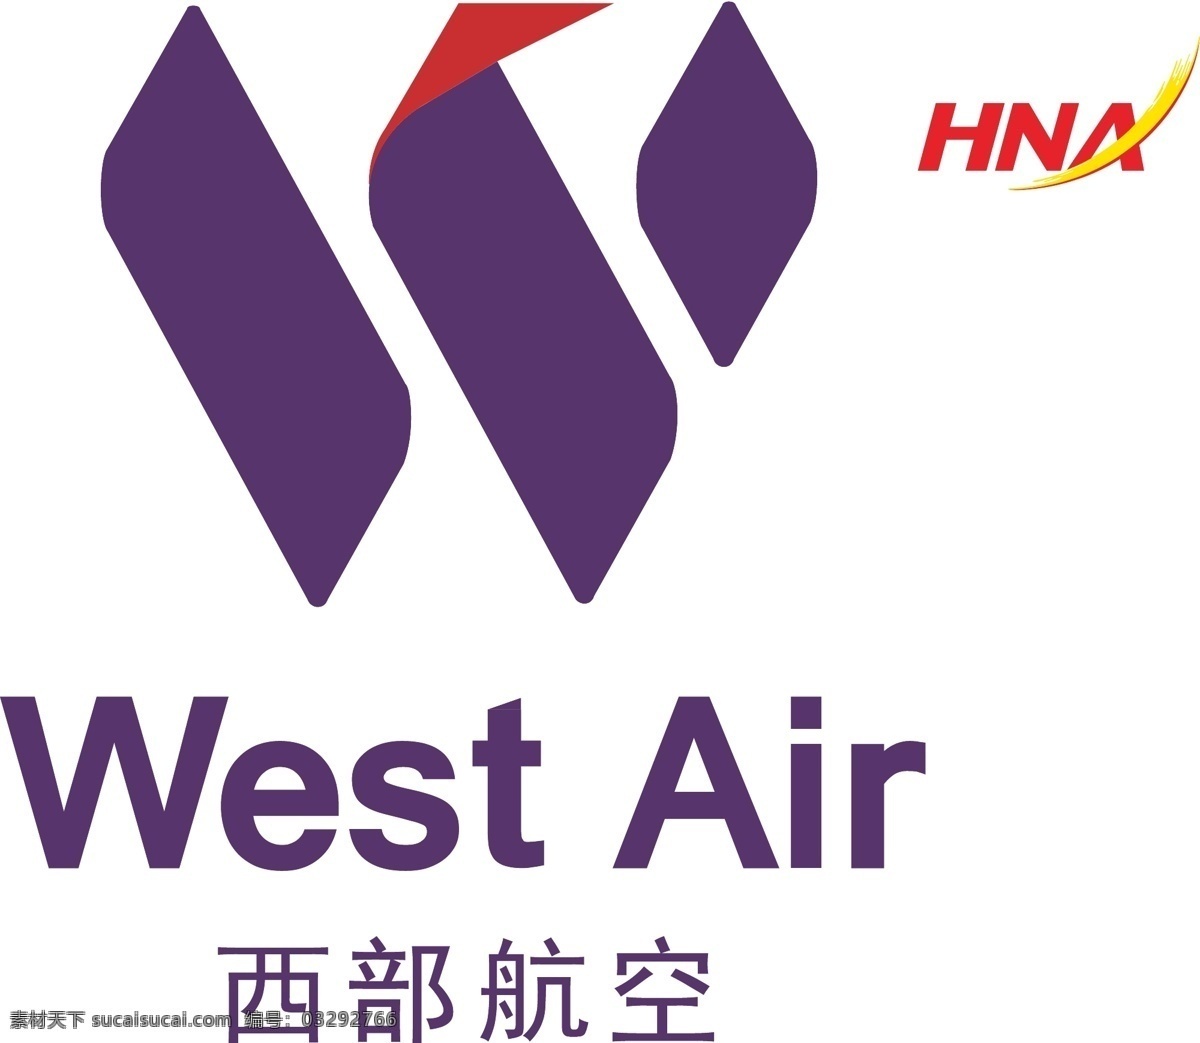 海航集团 西部航空 logo 白色